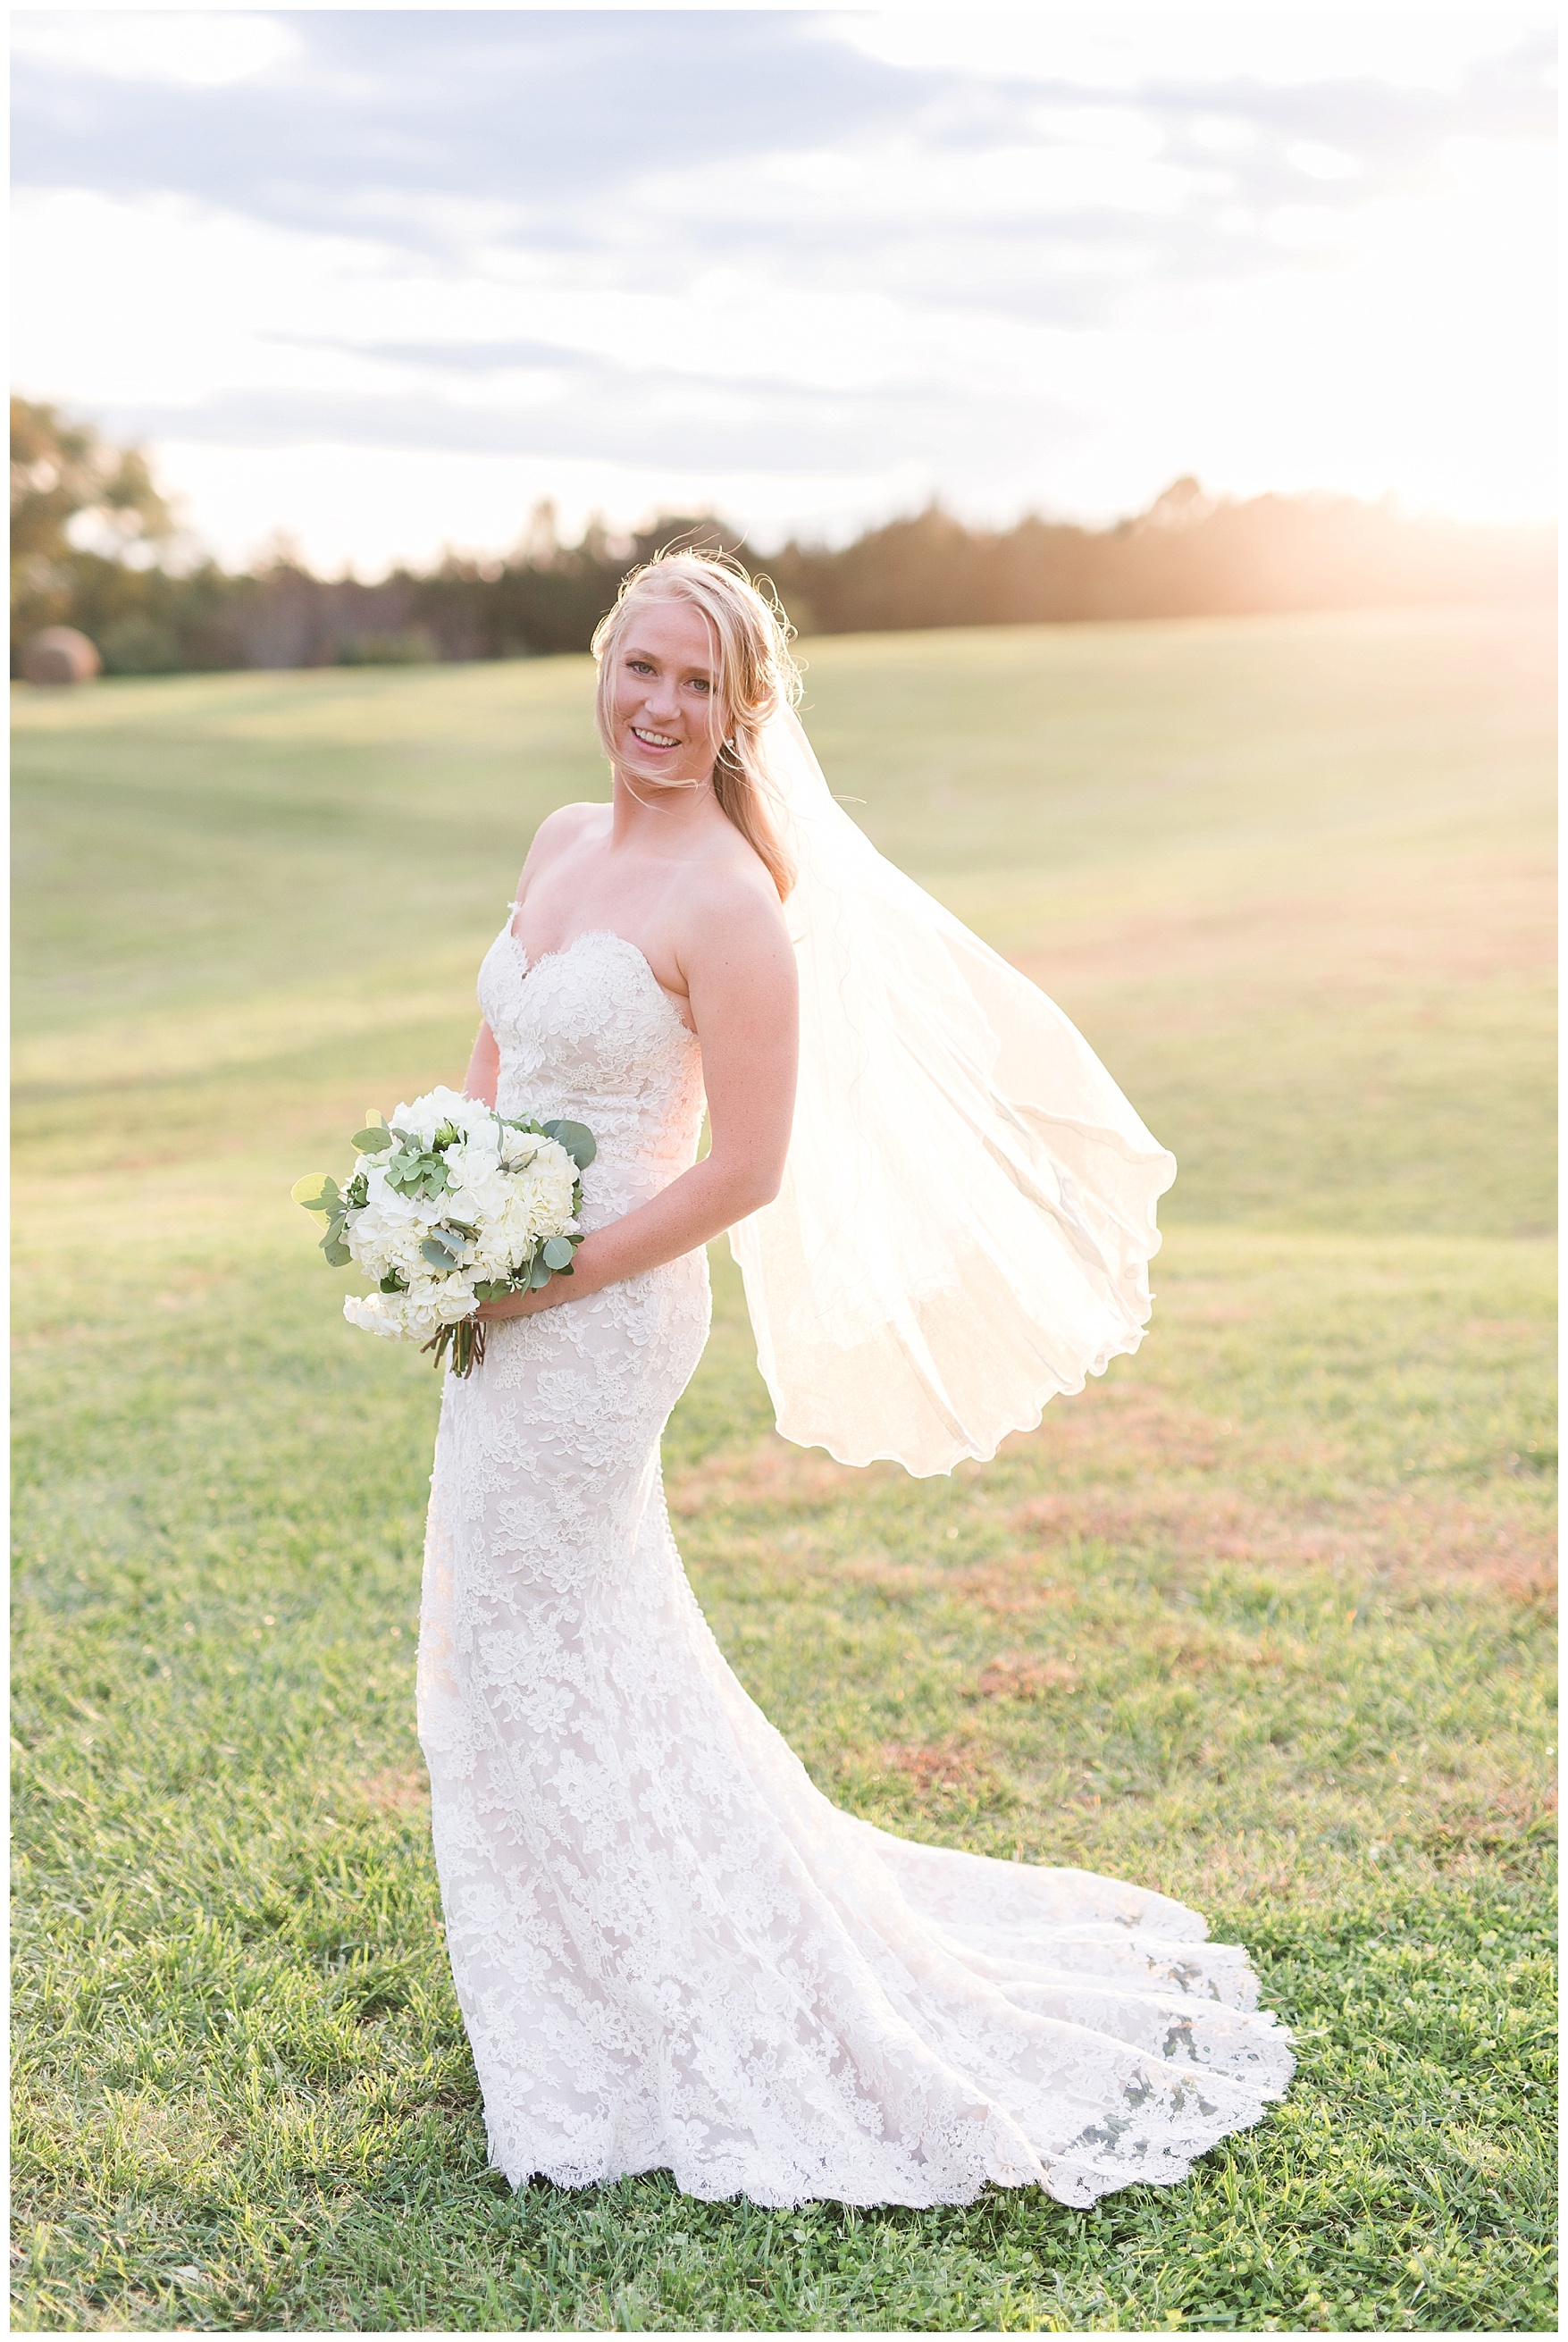 Sorella Farms Wedding in Lynchburg, VA || Sorella Farm Wedding in Evington, VA || Charlottesville VA Wedding